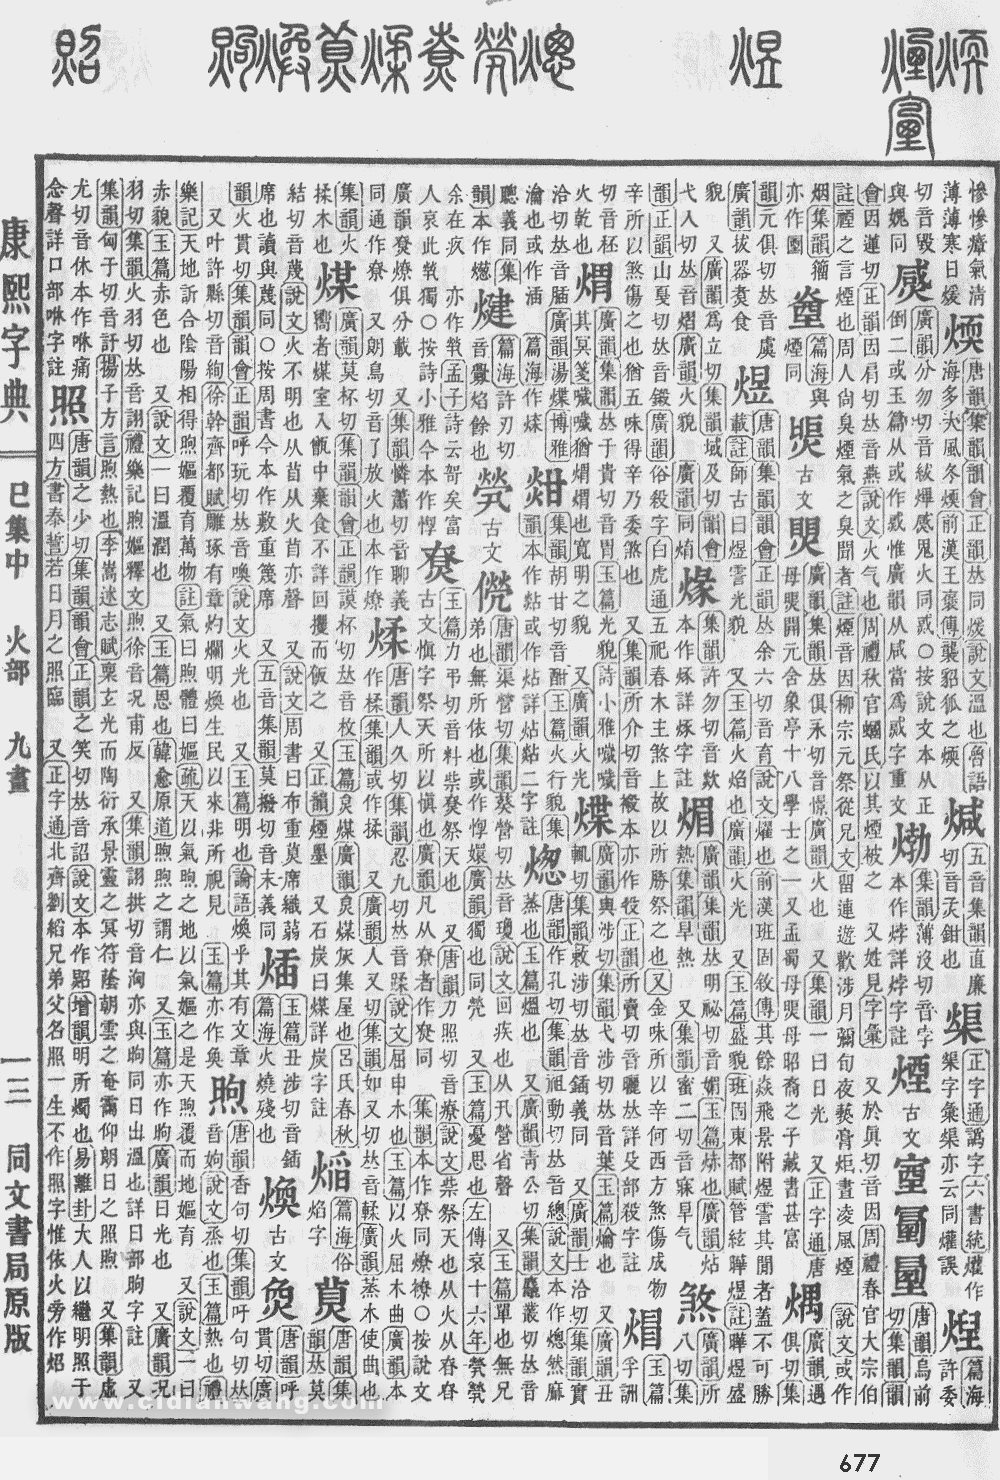 康熙字典掃描版第677頁